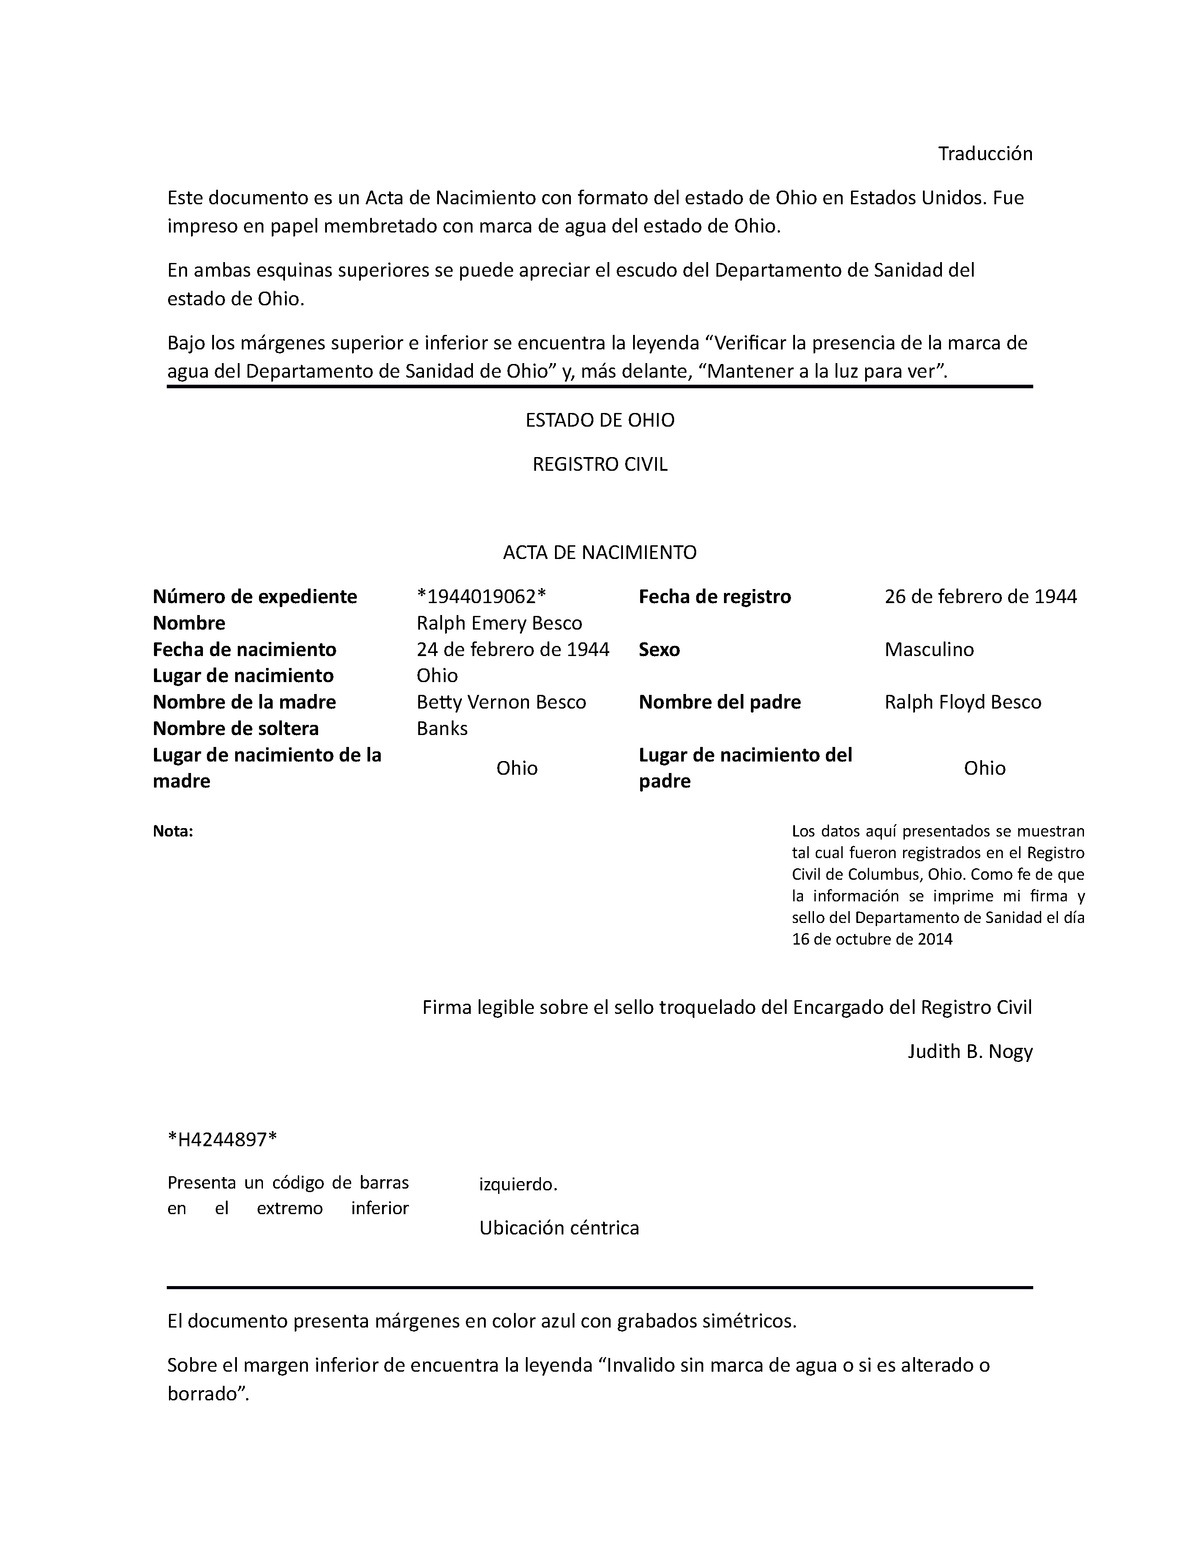 Ejemplo de traducción de acta de nacimiento eng-esp - Traducción Este  documento es un Acta de - Studocu